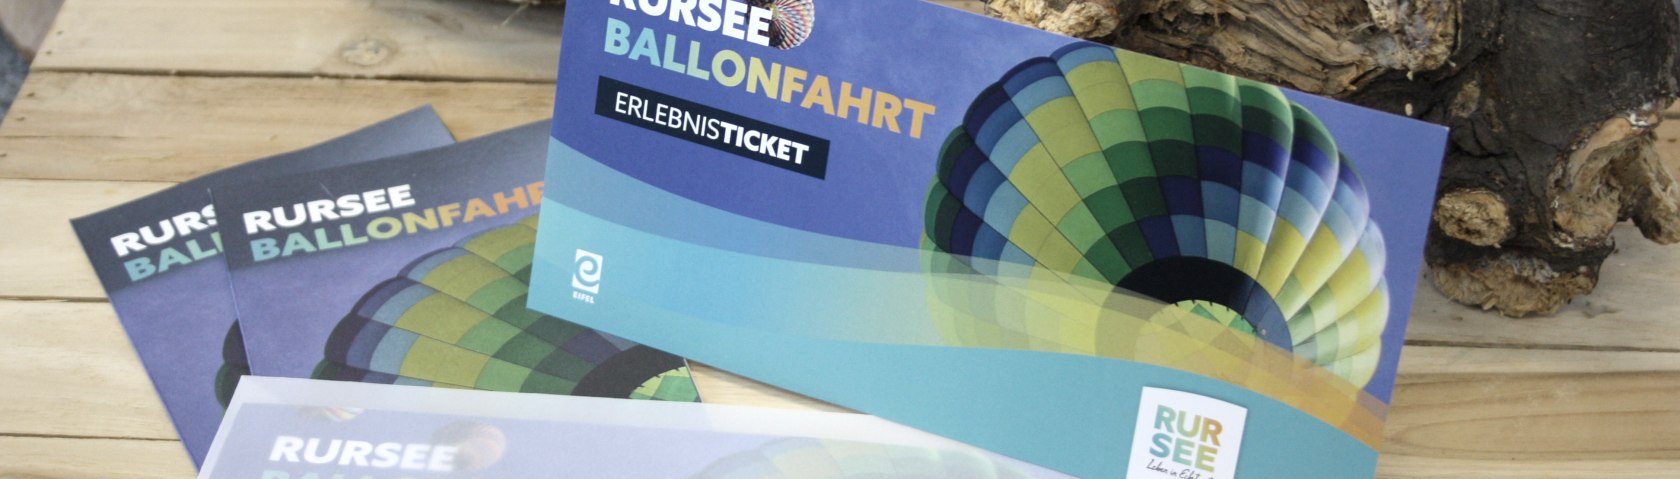 Rursee-Ballonfahrt ein Geschenk für Abenteurer, © Rursee-Touristik / C. Freuen